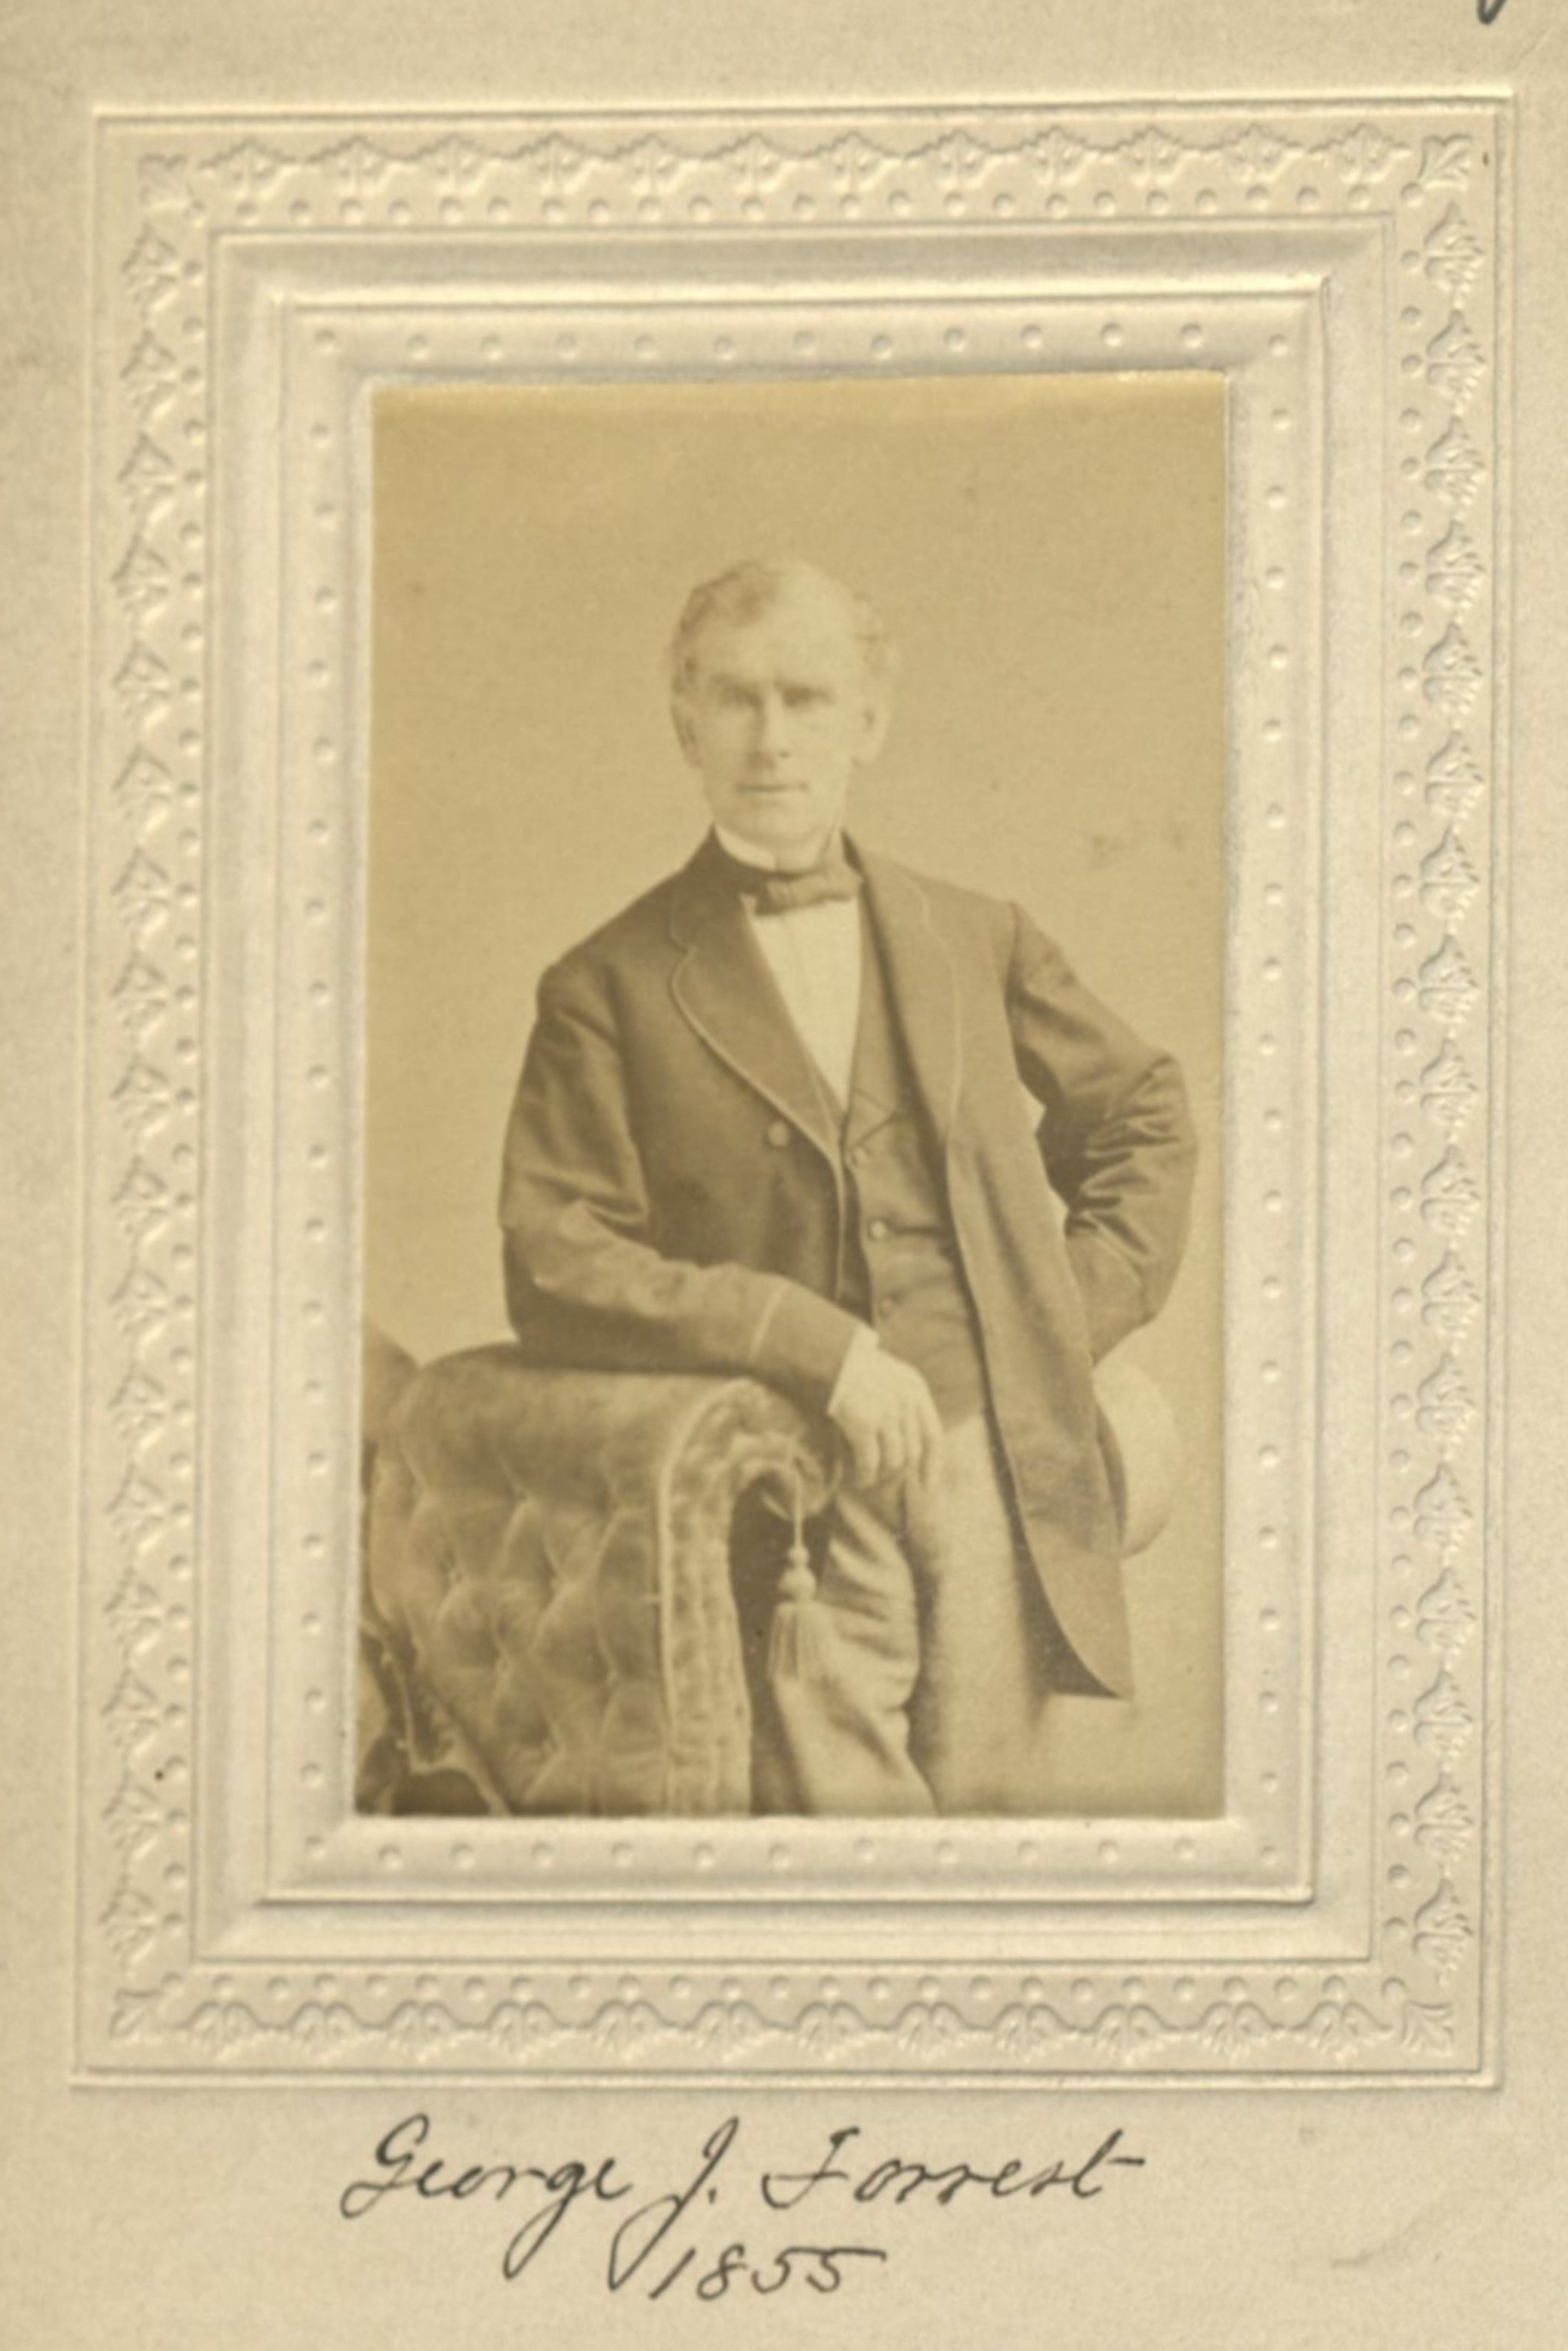 Member portrait of George J. Forrest